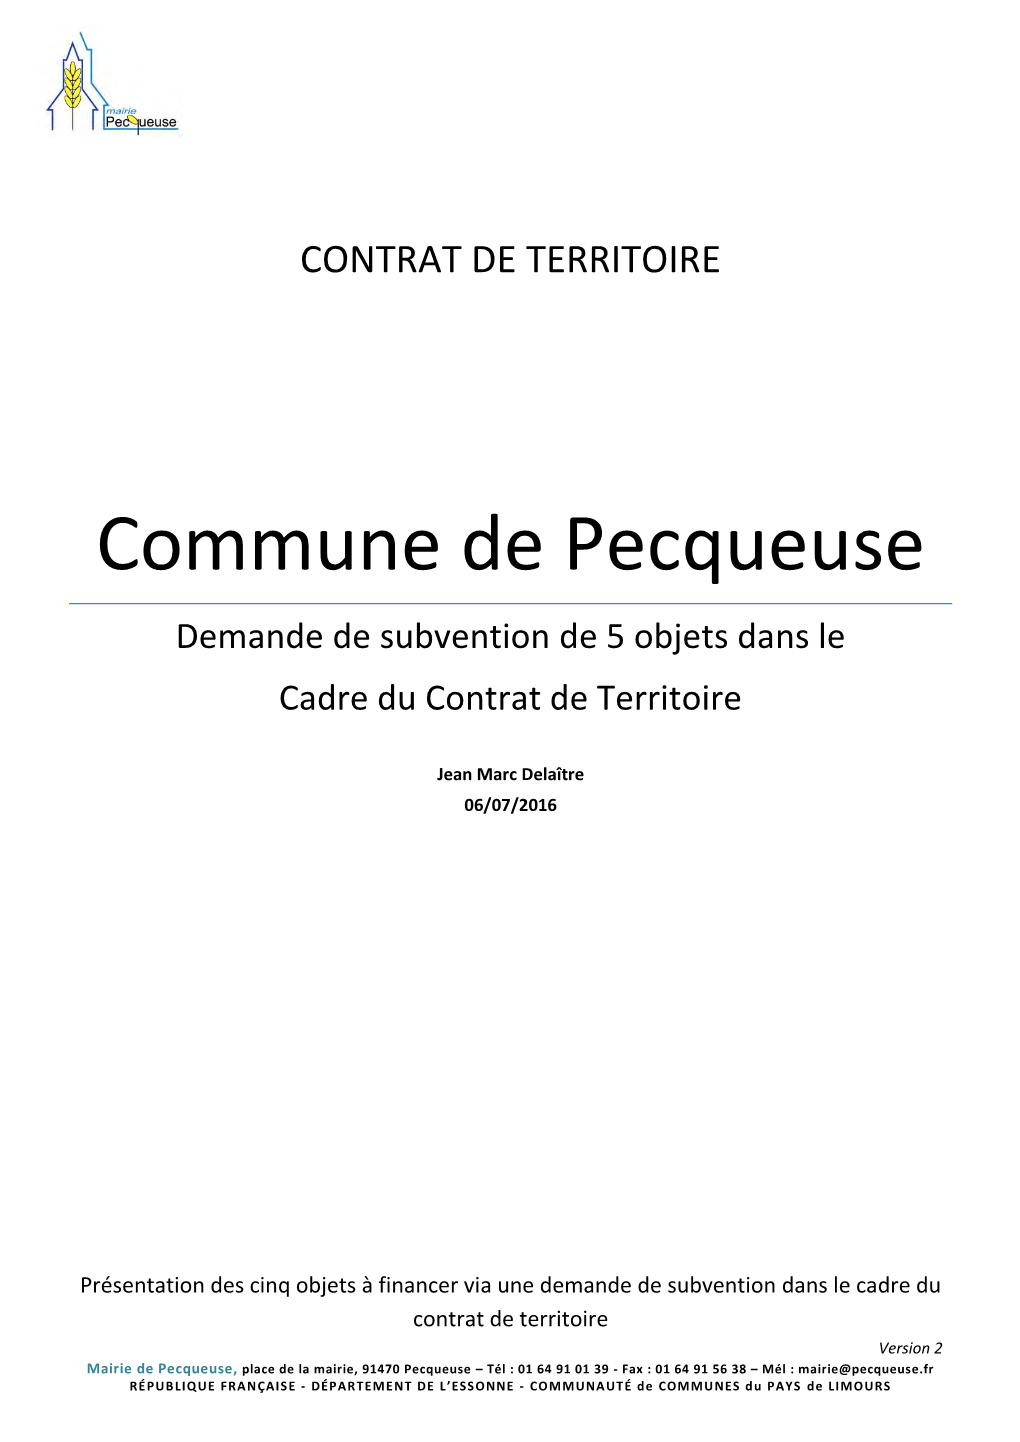 Commune De Pecqueuse Demande De Subvention De 5 Objets Dans Le Cadre Du Contrat De Territoire